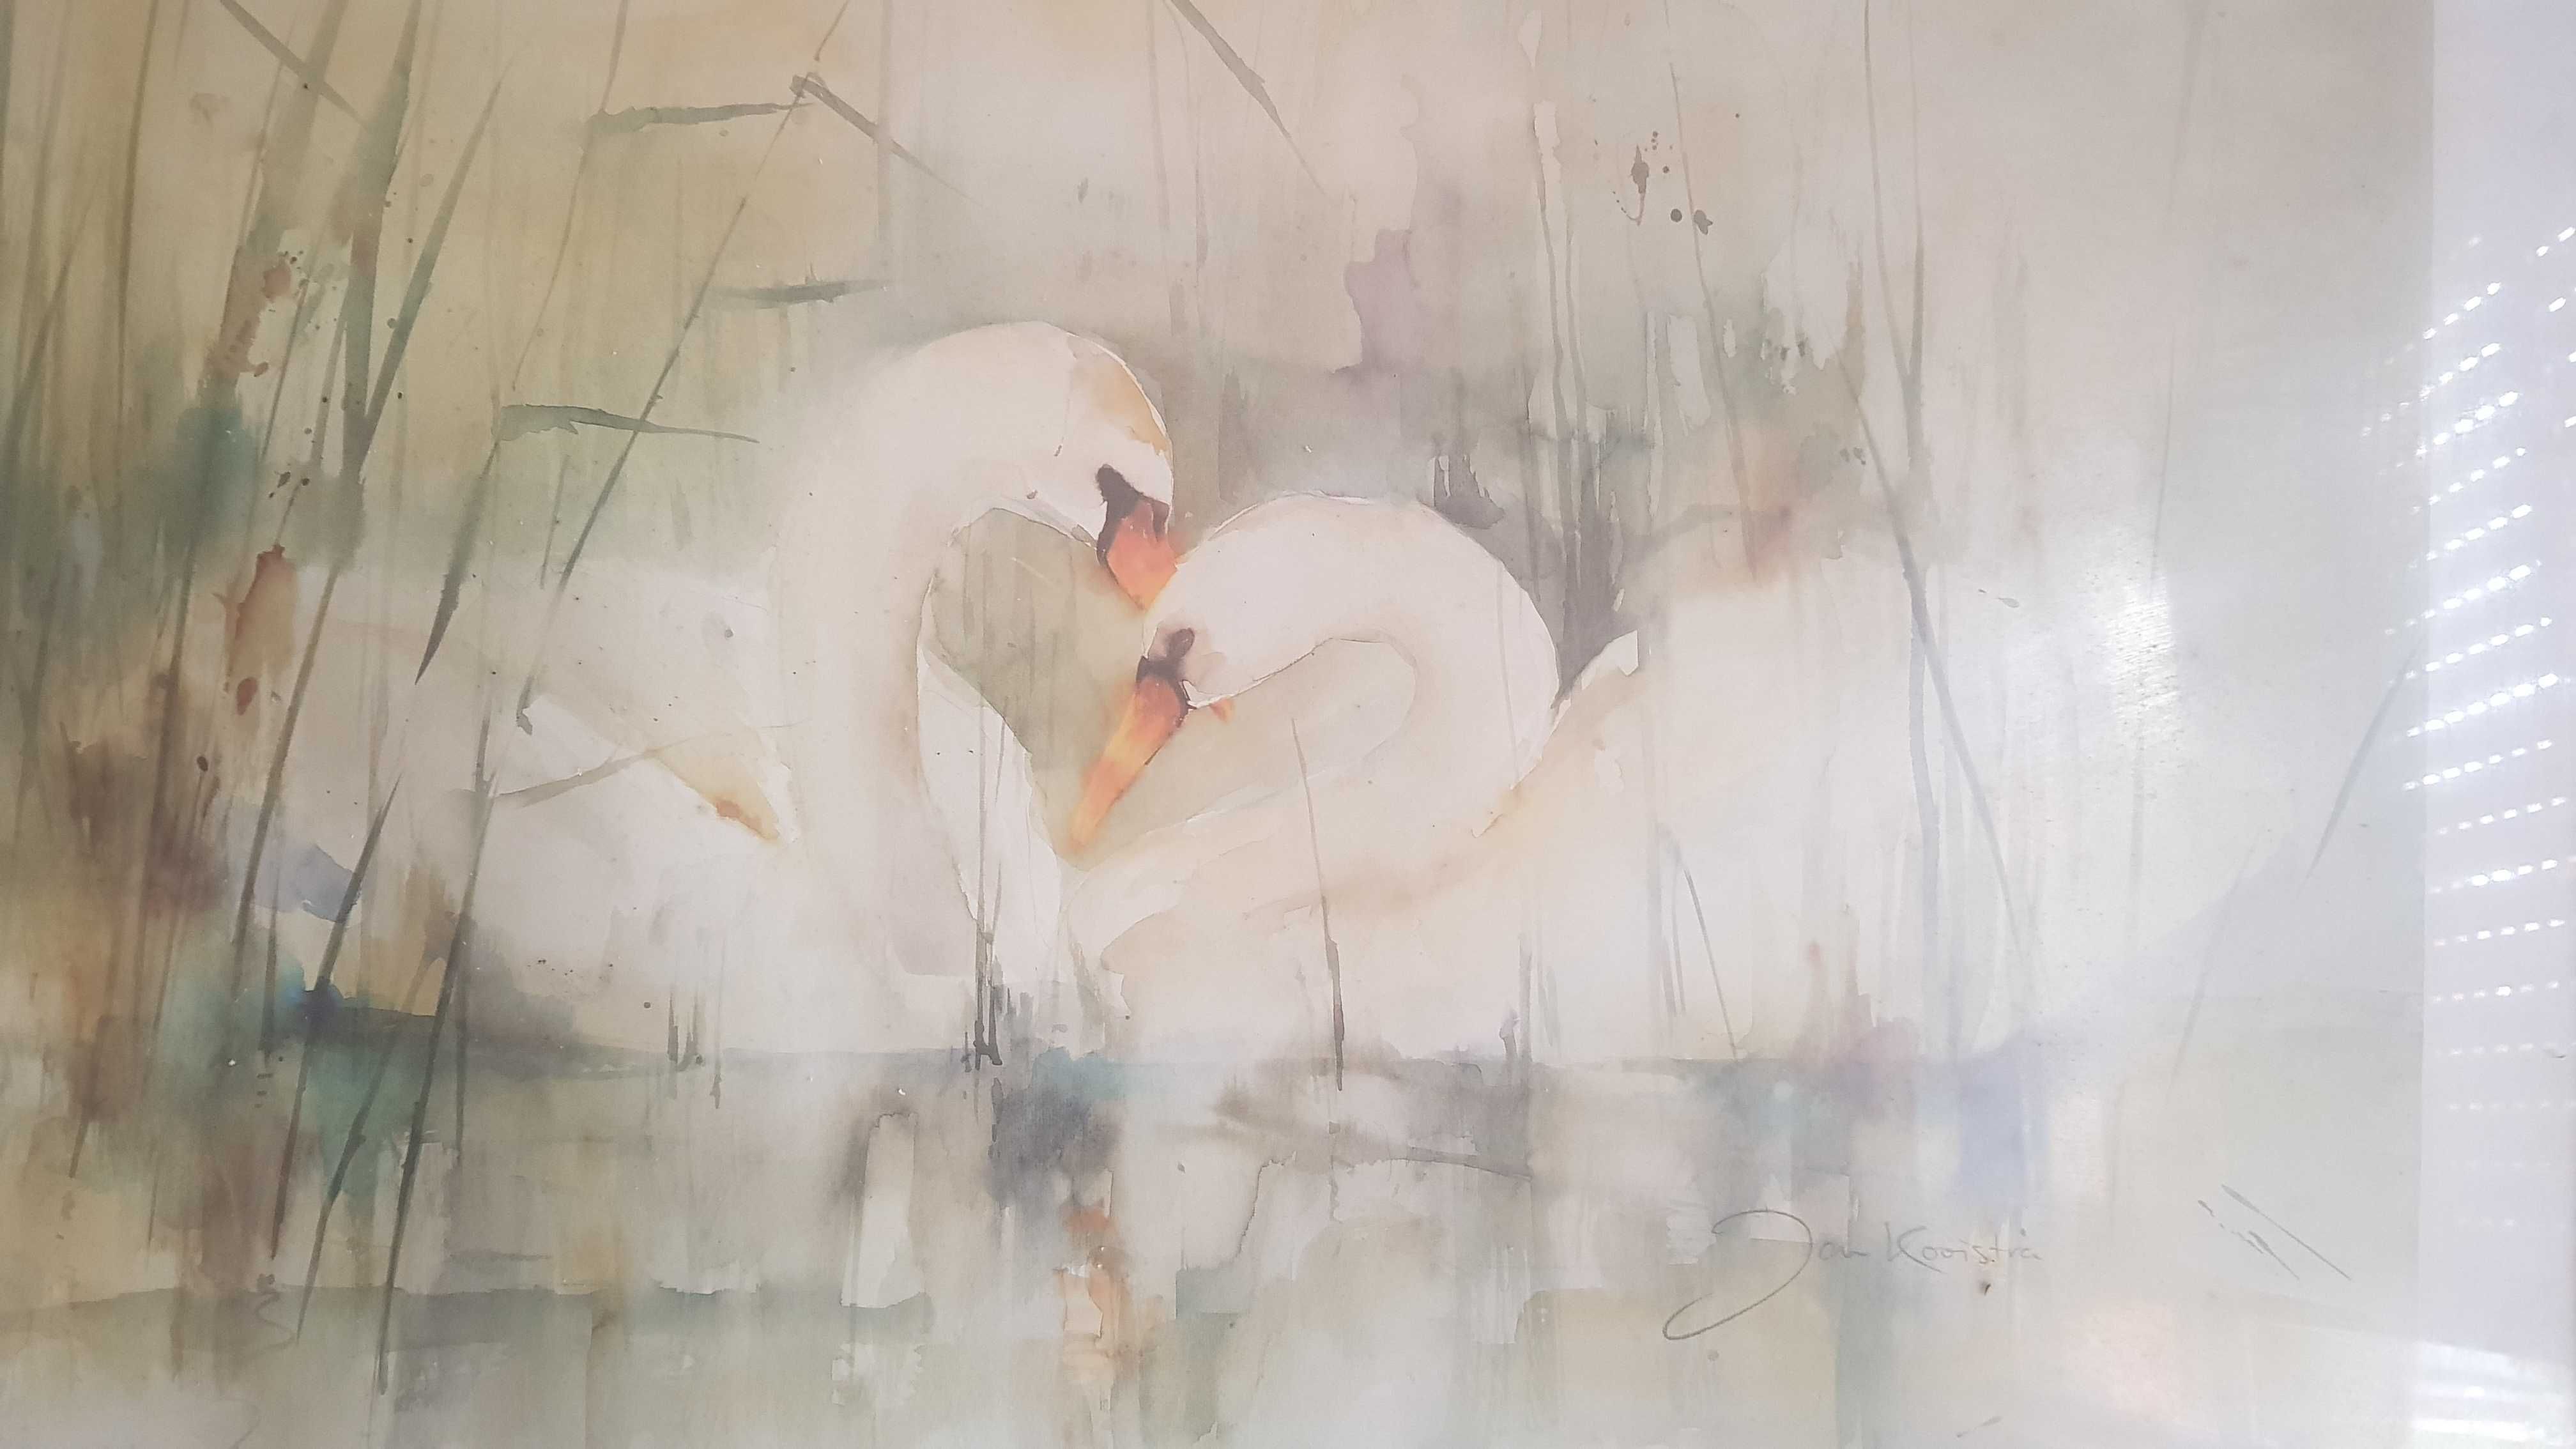 Serigrafia de Jan Kooistra "Os Cisnes" moldura em cerejeira